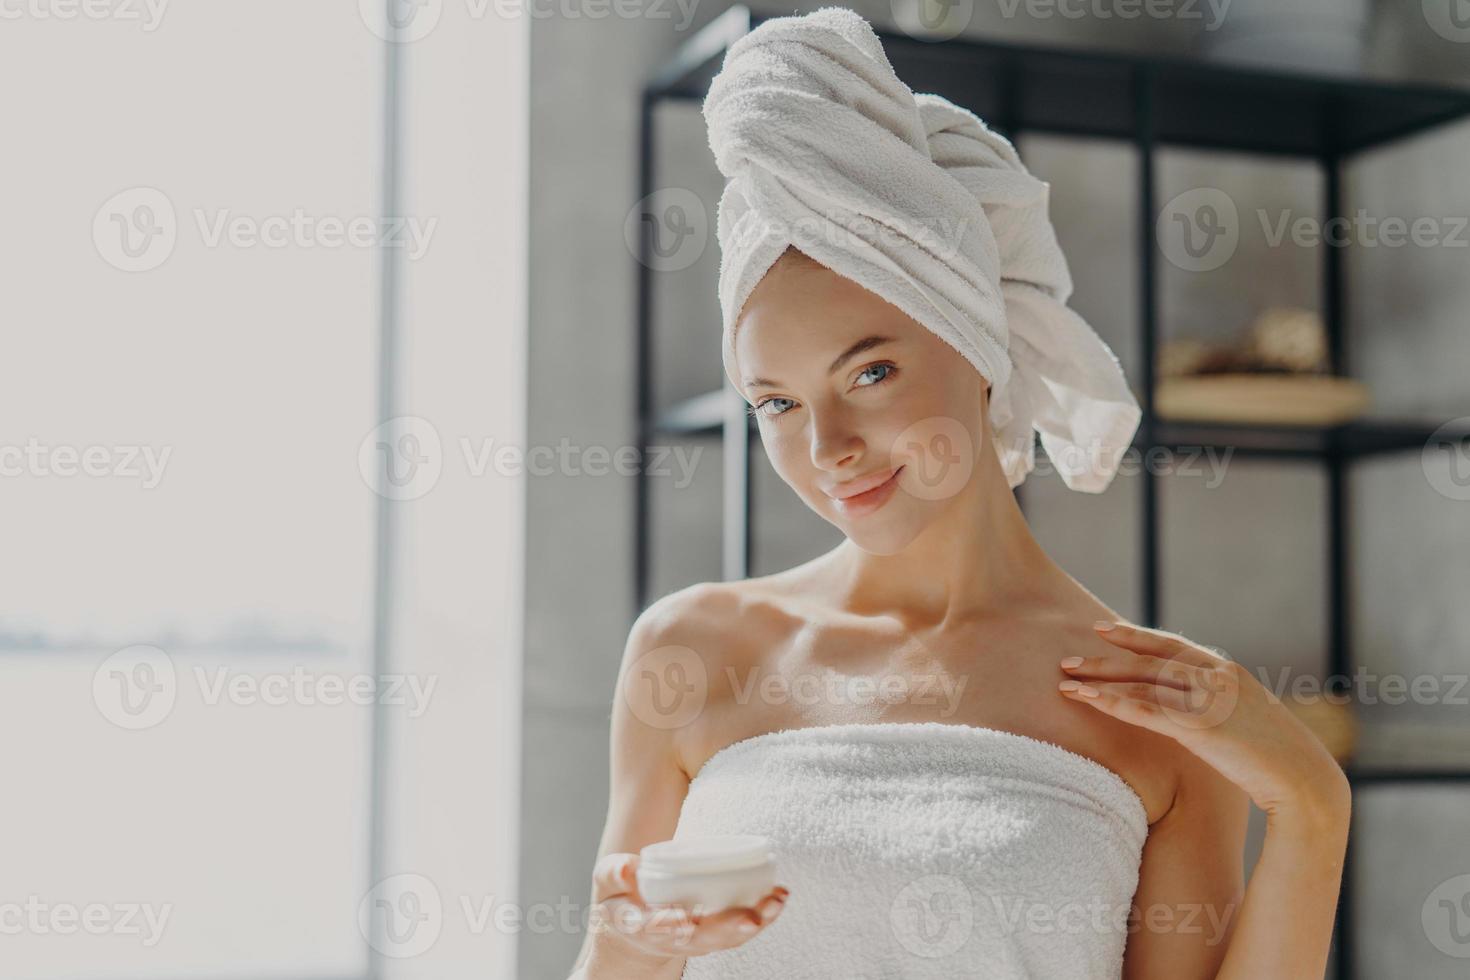 la photo d'une jeune femme satisfaite a une peau pure et saine, applique une crème pour le corps, utilise un traitement de la peau pour hydrater, se tient enveloppée dans une serviette, sourit doucement. concept de soins personnels, de beauté et de bien-être